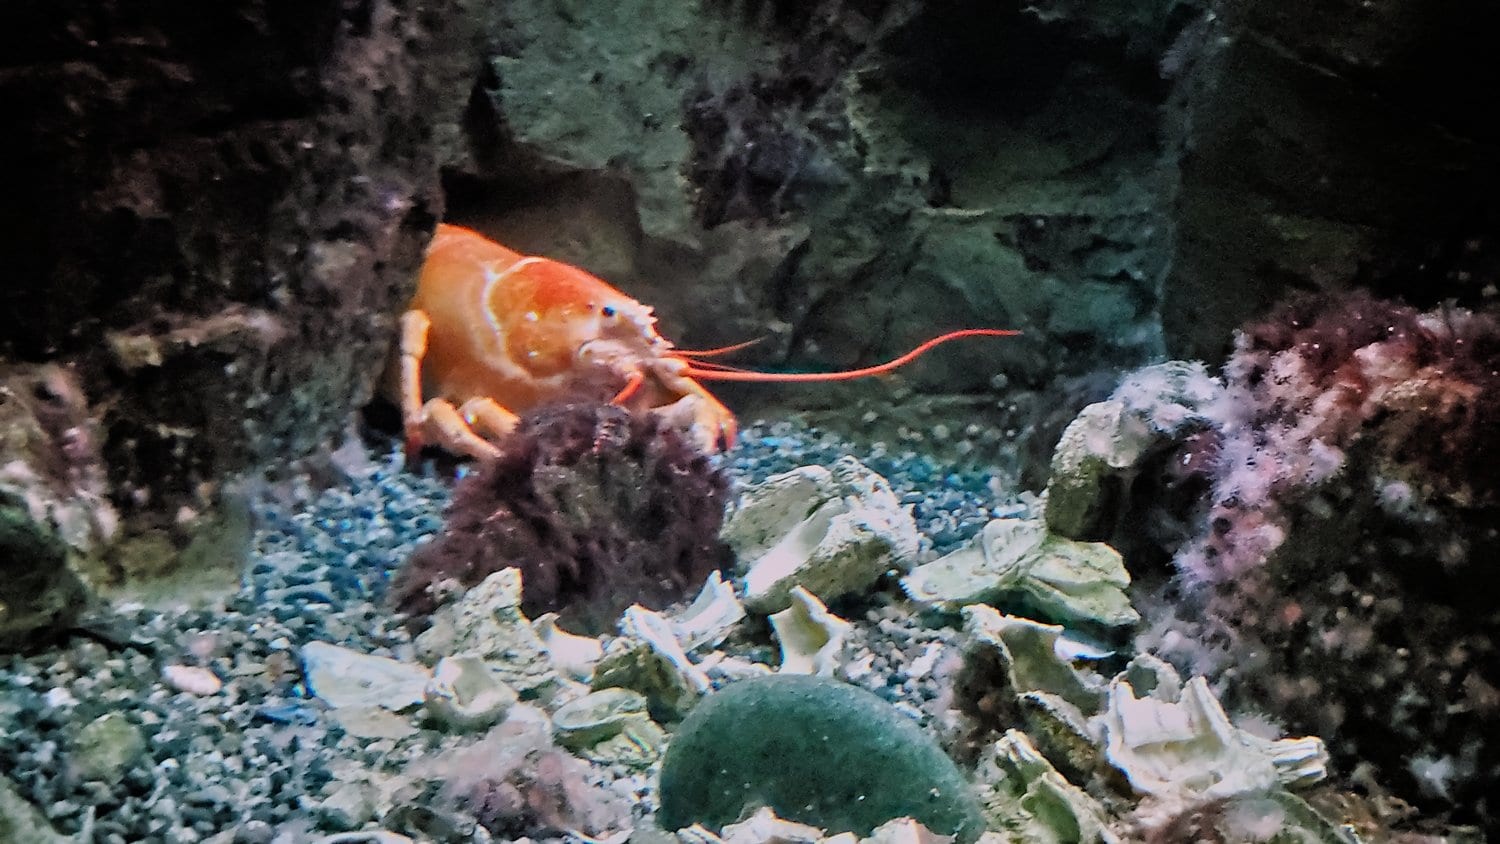 Lobster at Shedd Aquarium.